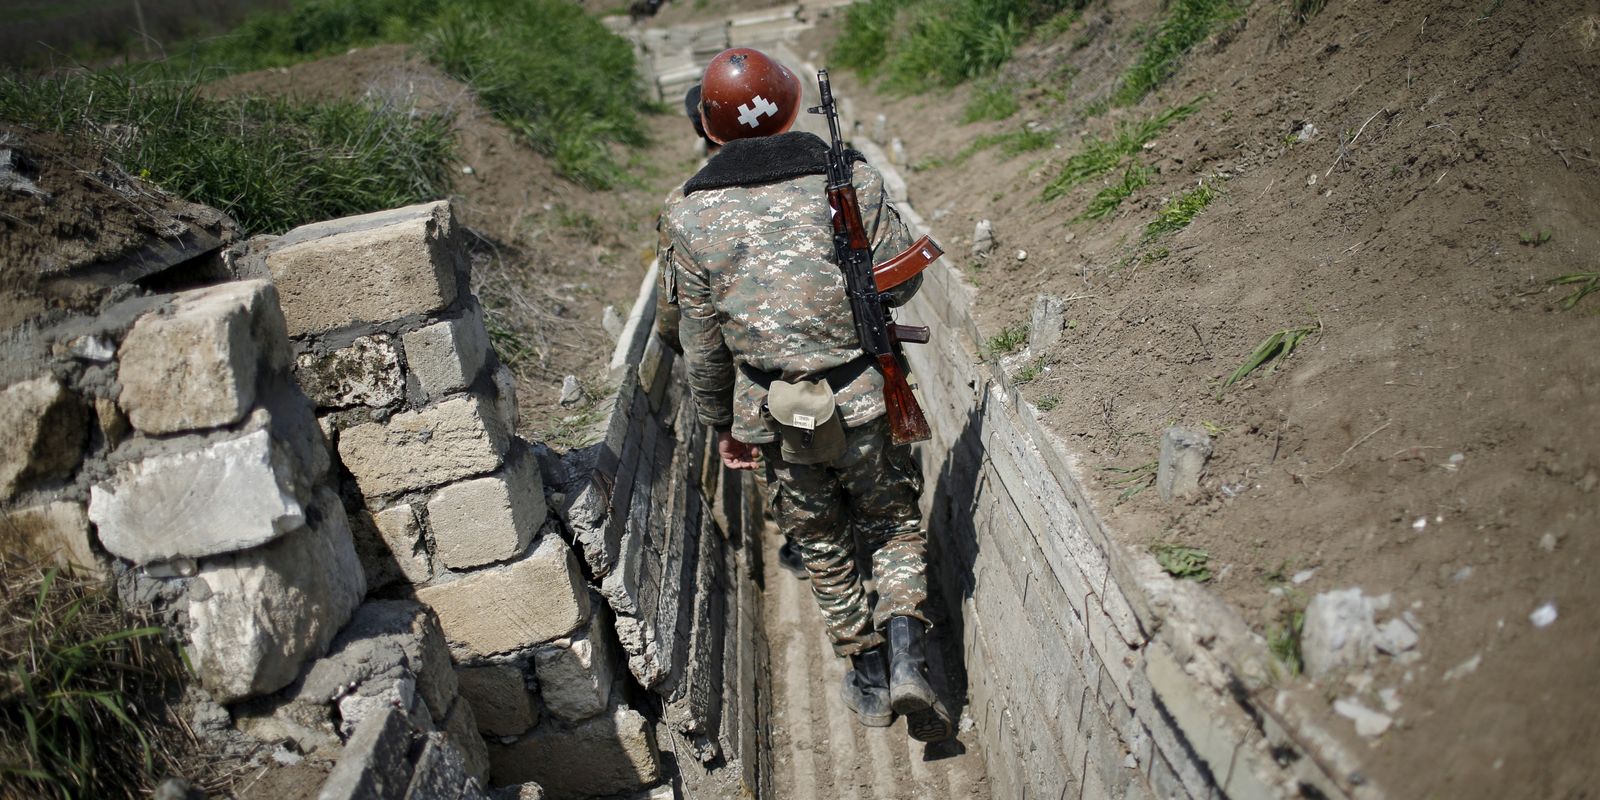 Nagorno-Karabakh: 30 anos de guerra no Cáucaso